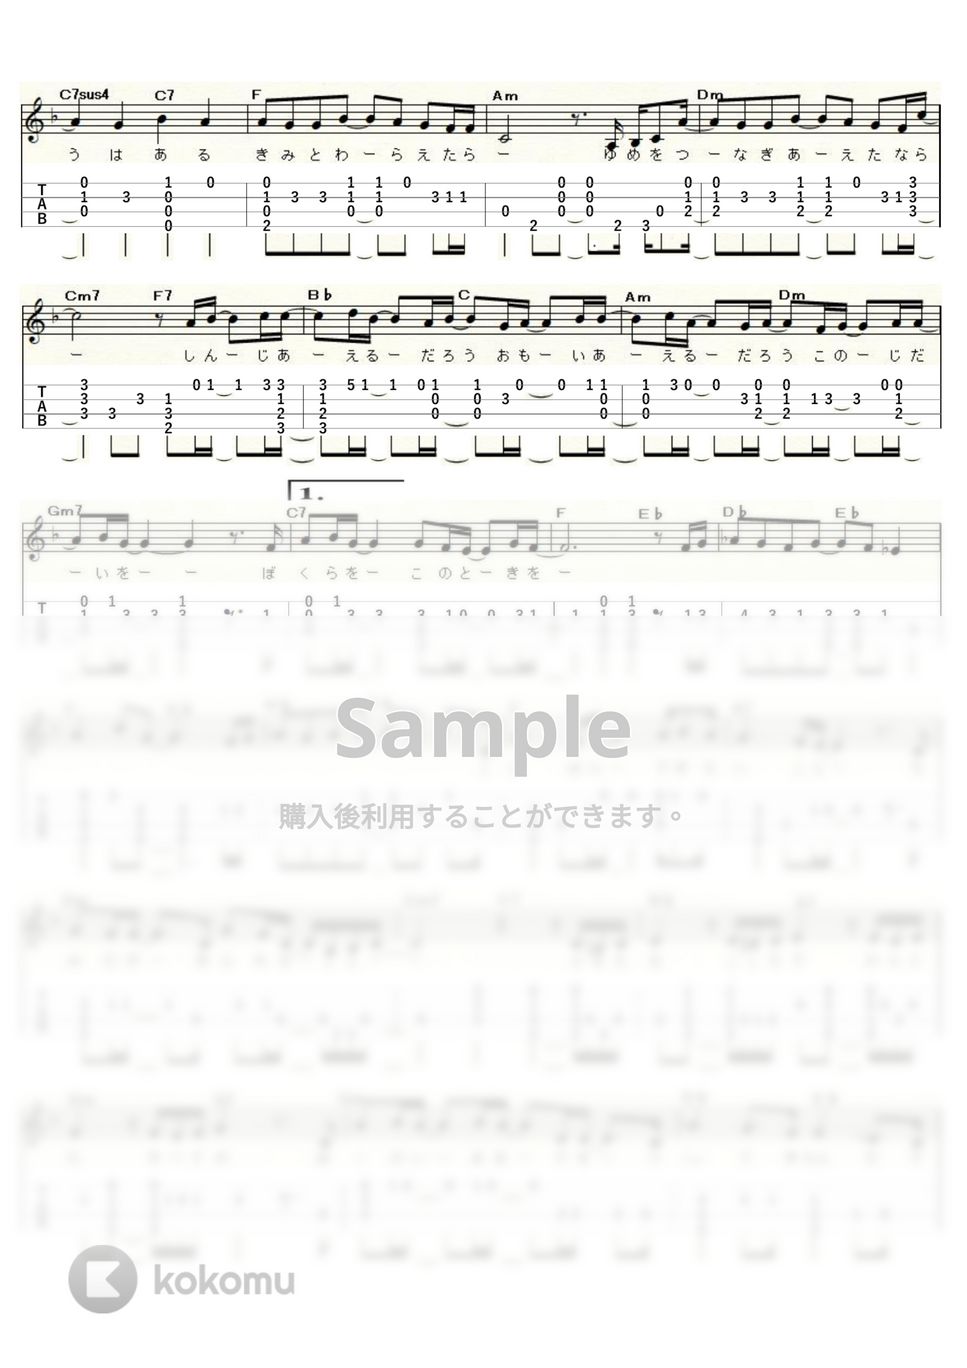 いきものがかり - 風が吹いている (ｳｸﾚﾚｿﾛ / Low-G / 中～上級) by ukulelepapa